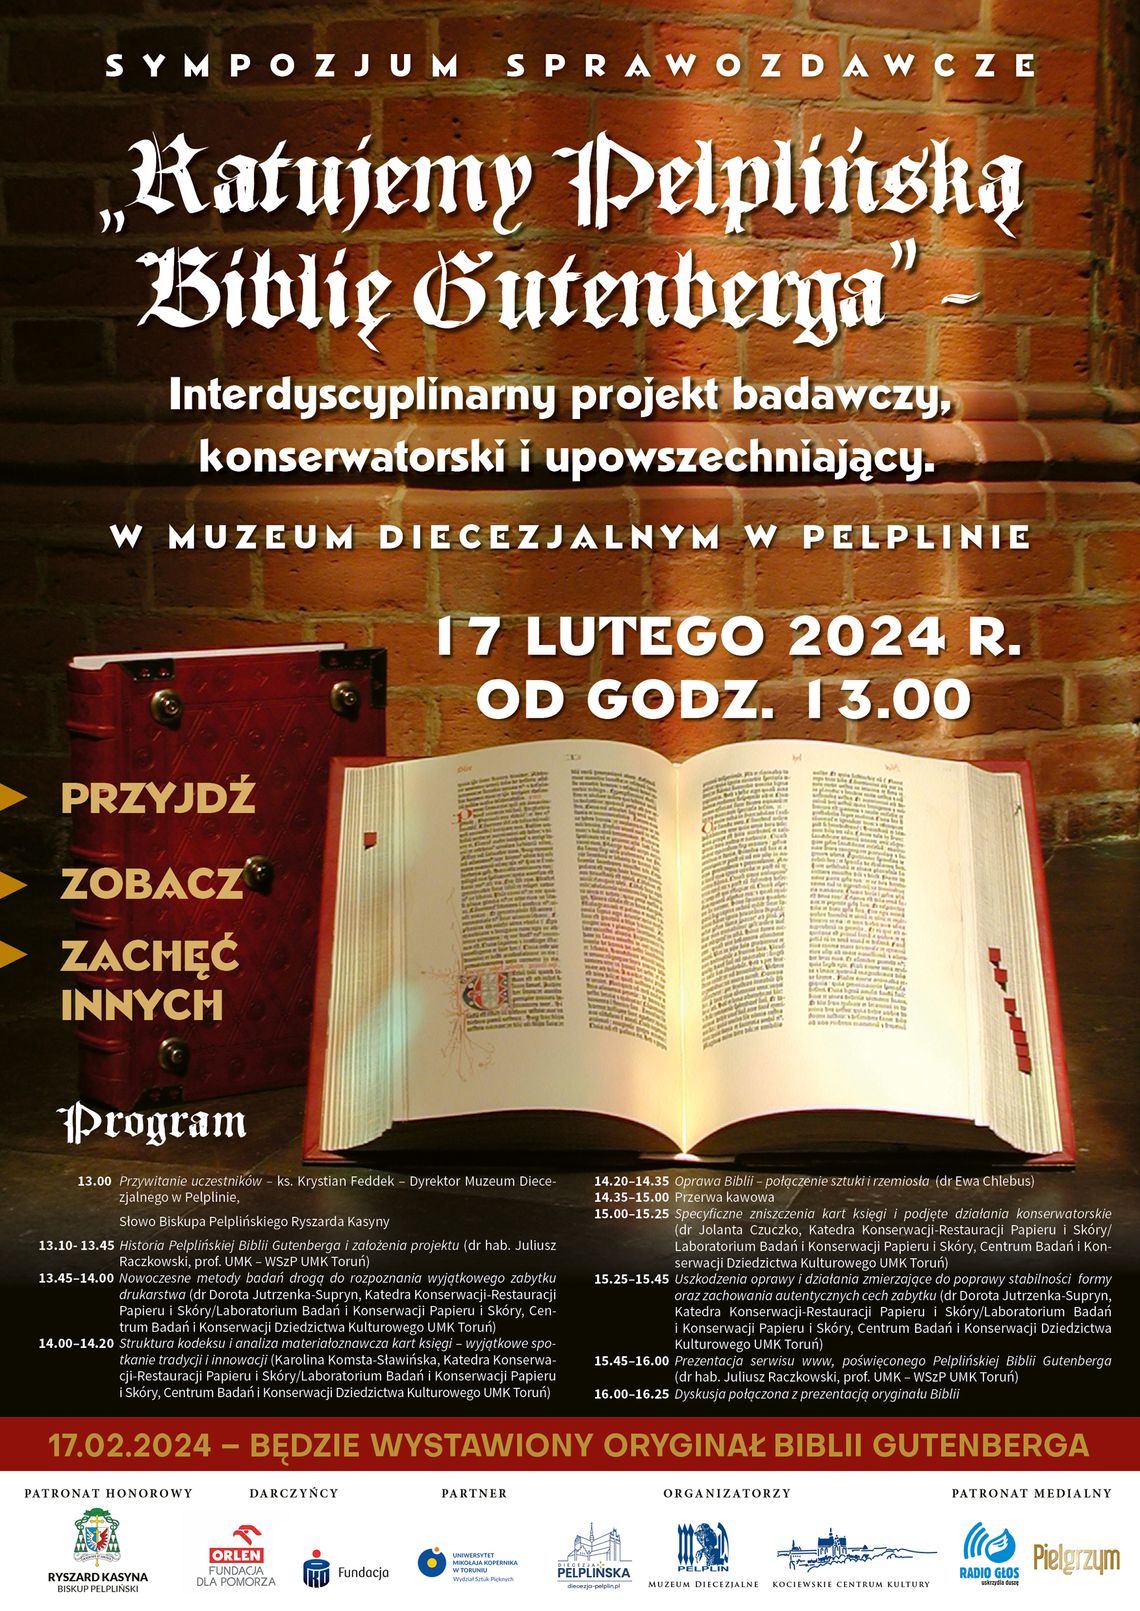 Sympozjum sprawozdawcze pt. Ratujemy Pelplińską Biblię Gutenberga